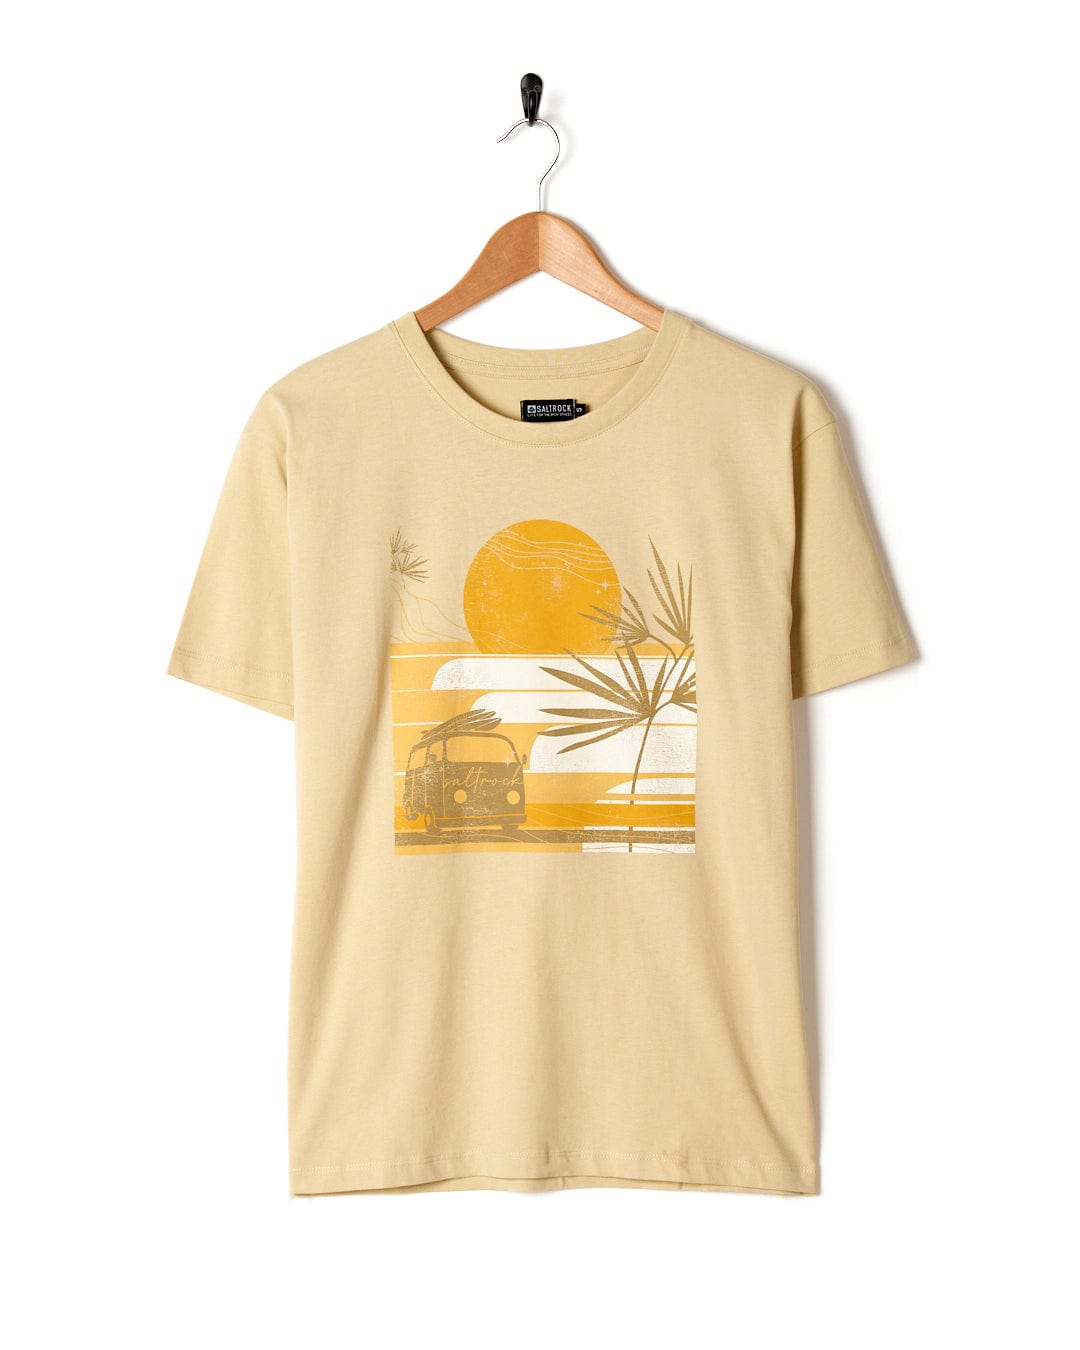 An oversized Saltrock t-shirt featuring a sunset scene at the beach.